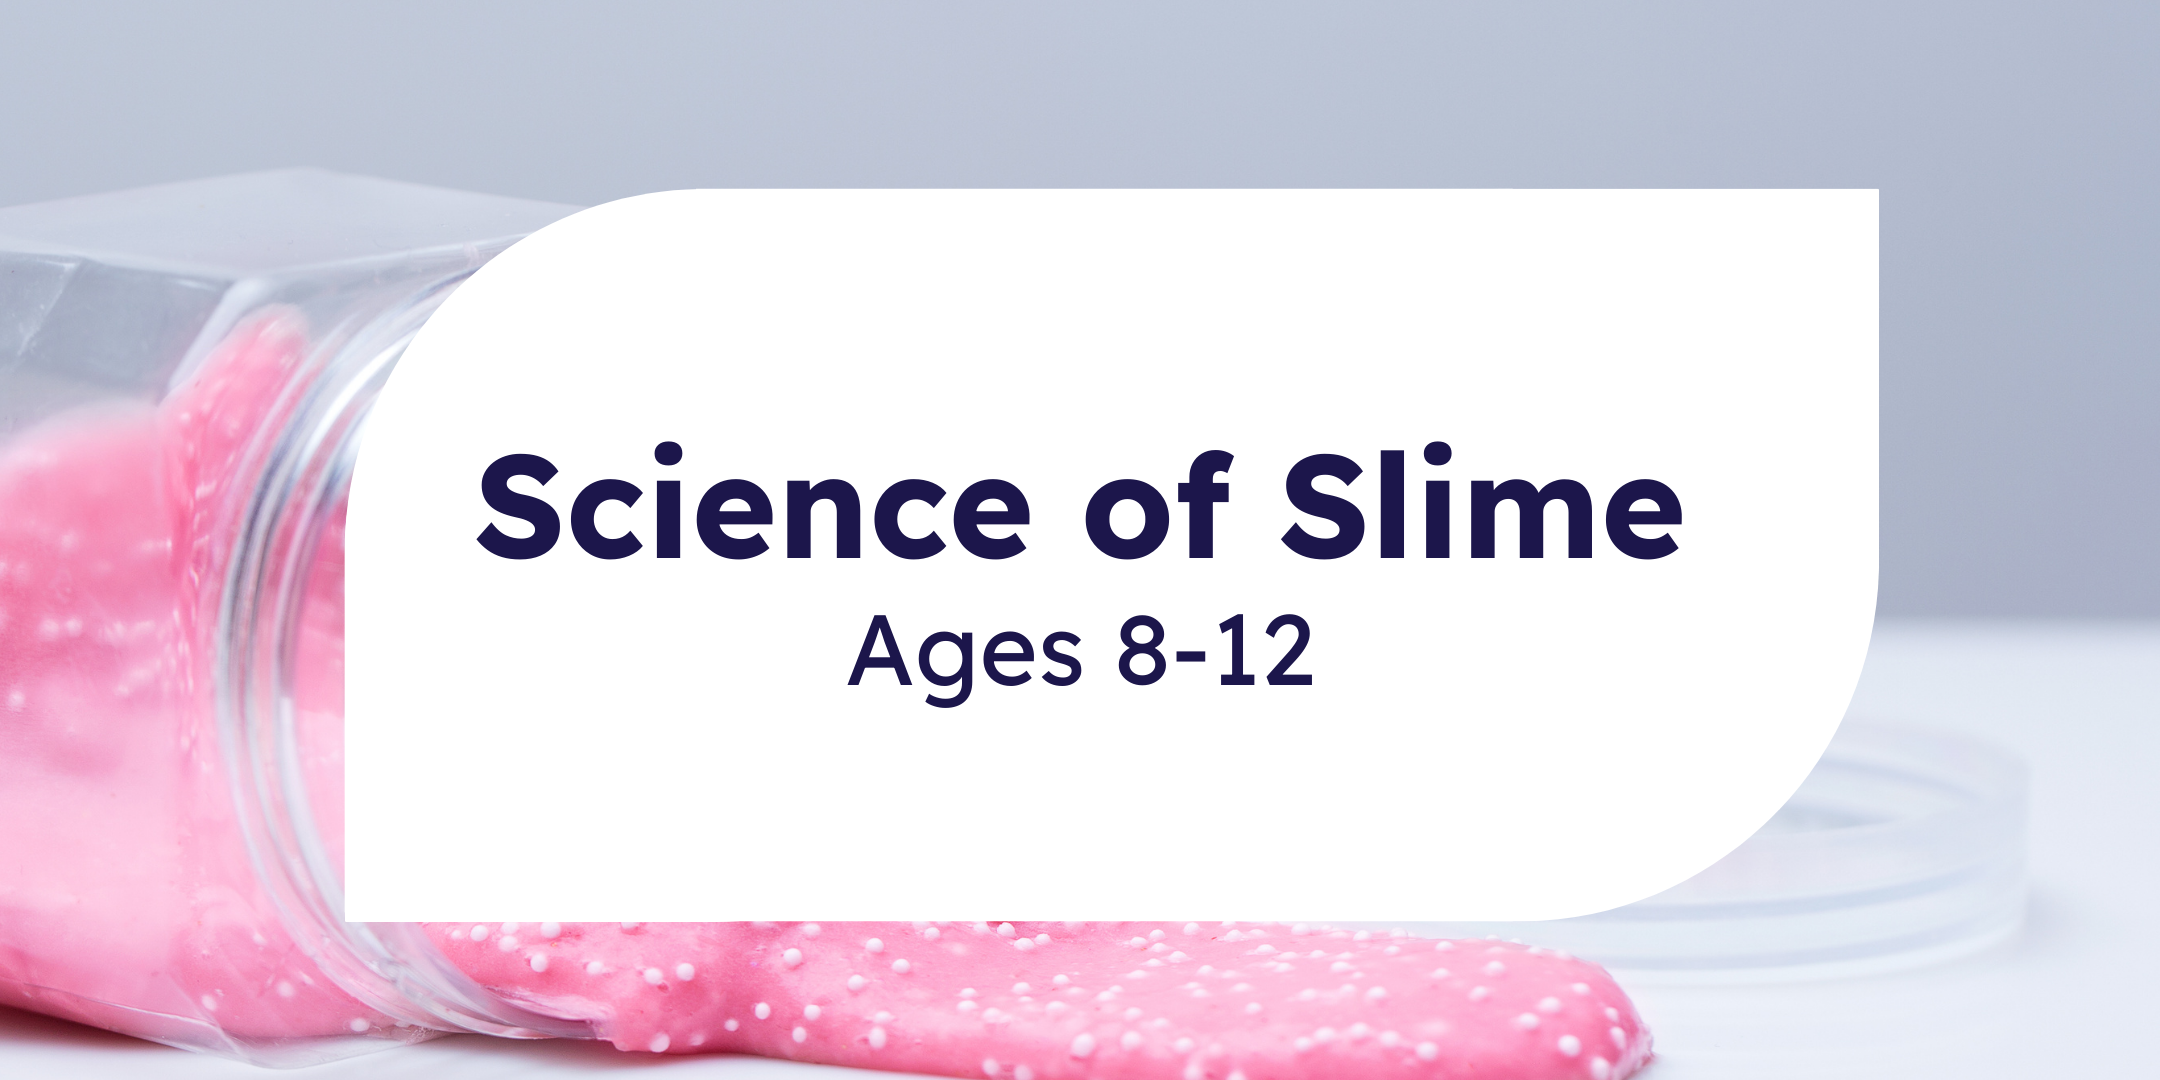 Science of Slime